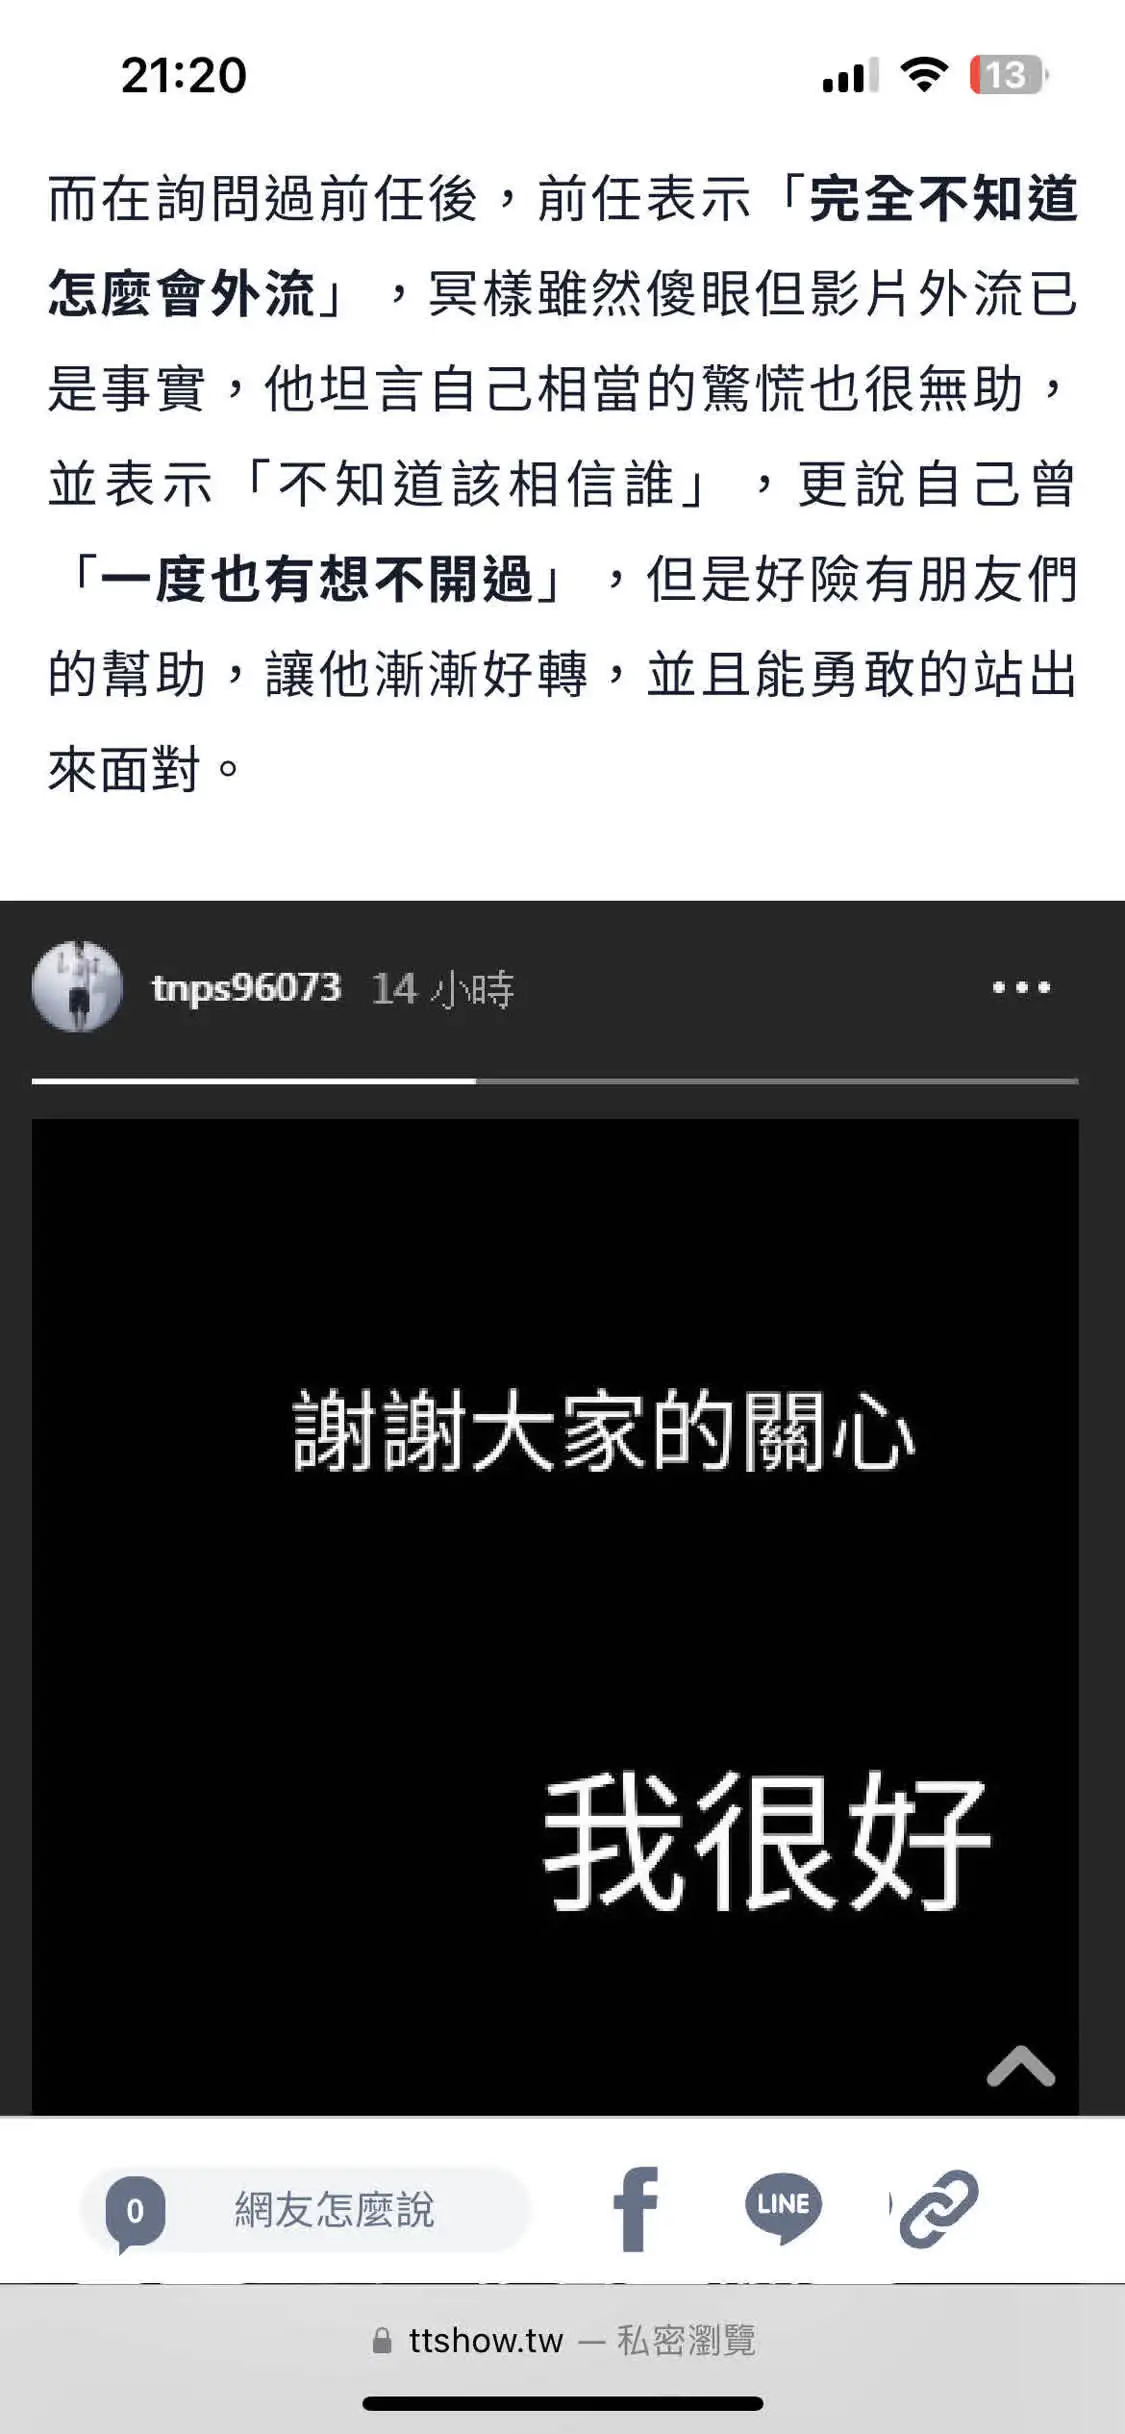 网友发长文控诉炎亚纶 称其与未成年人发生关系并拍摄视频